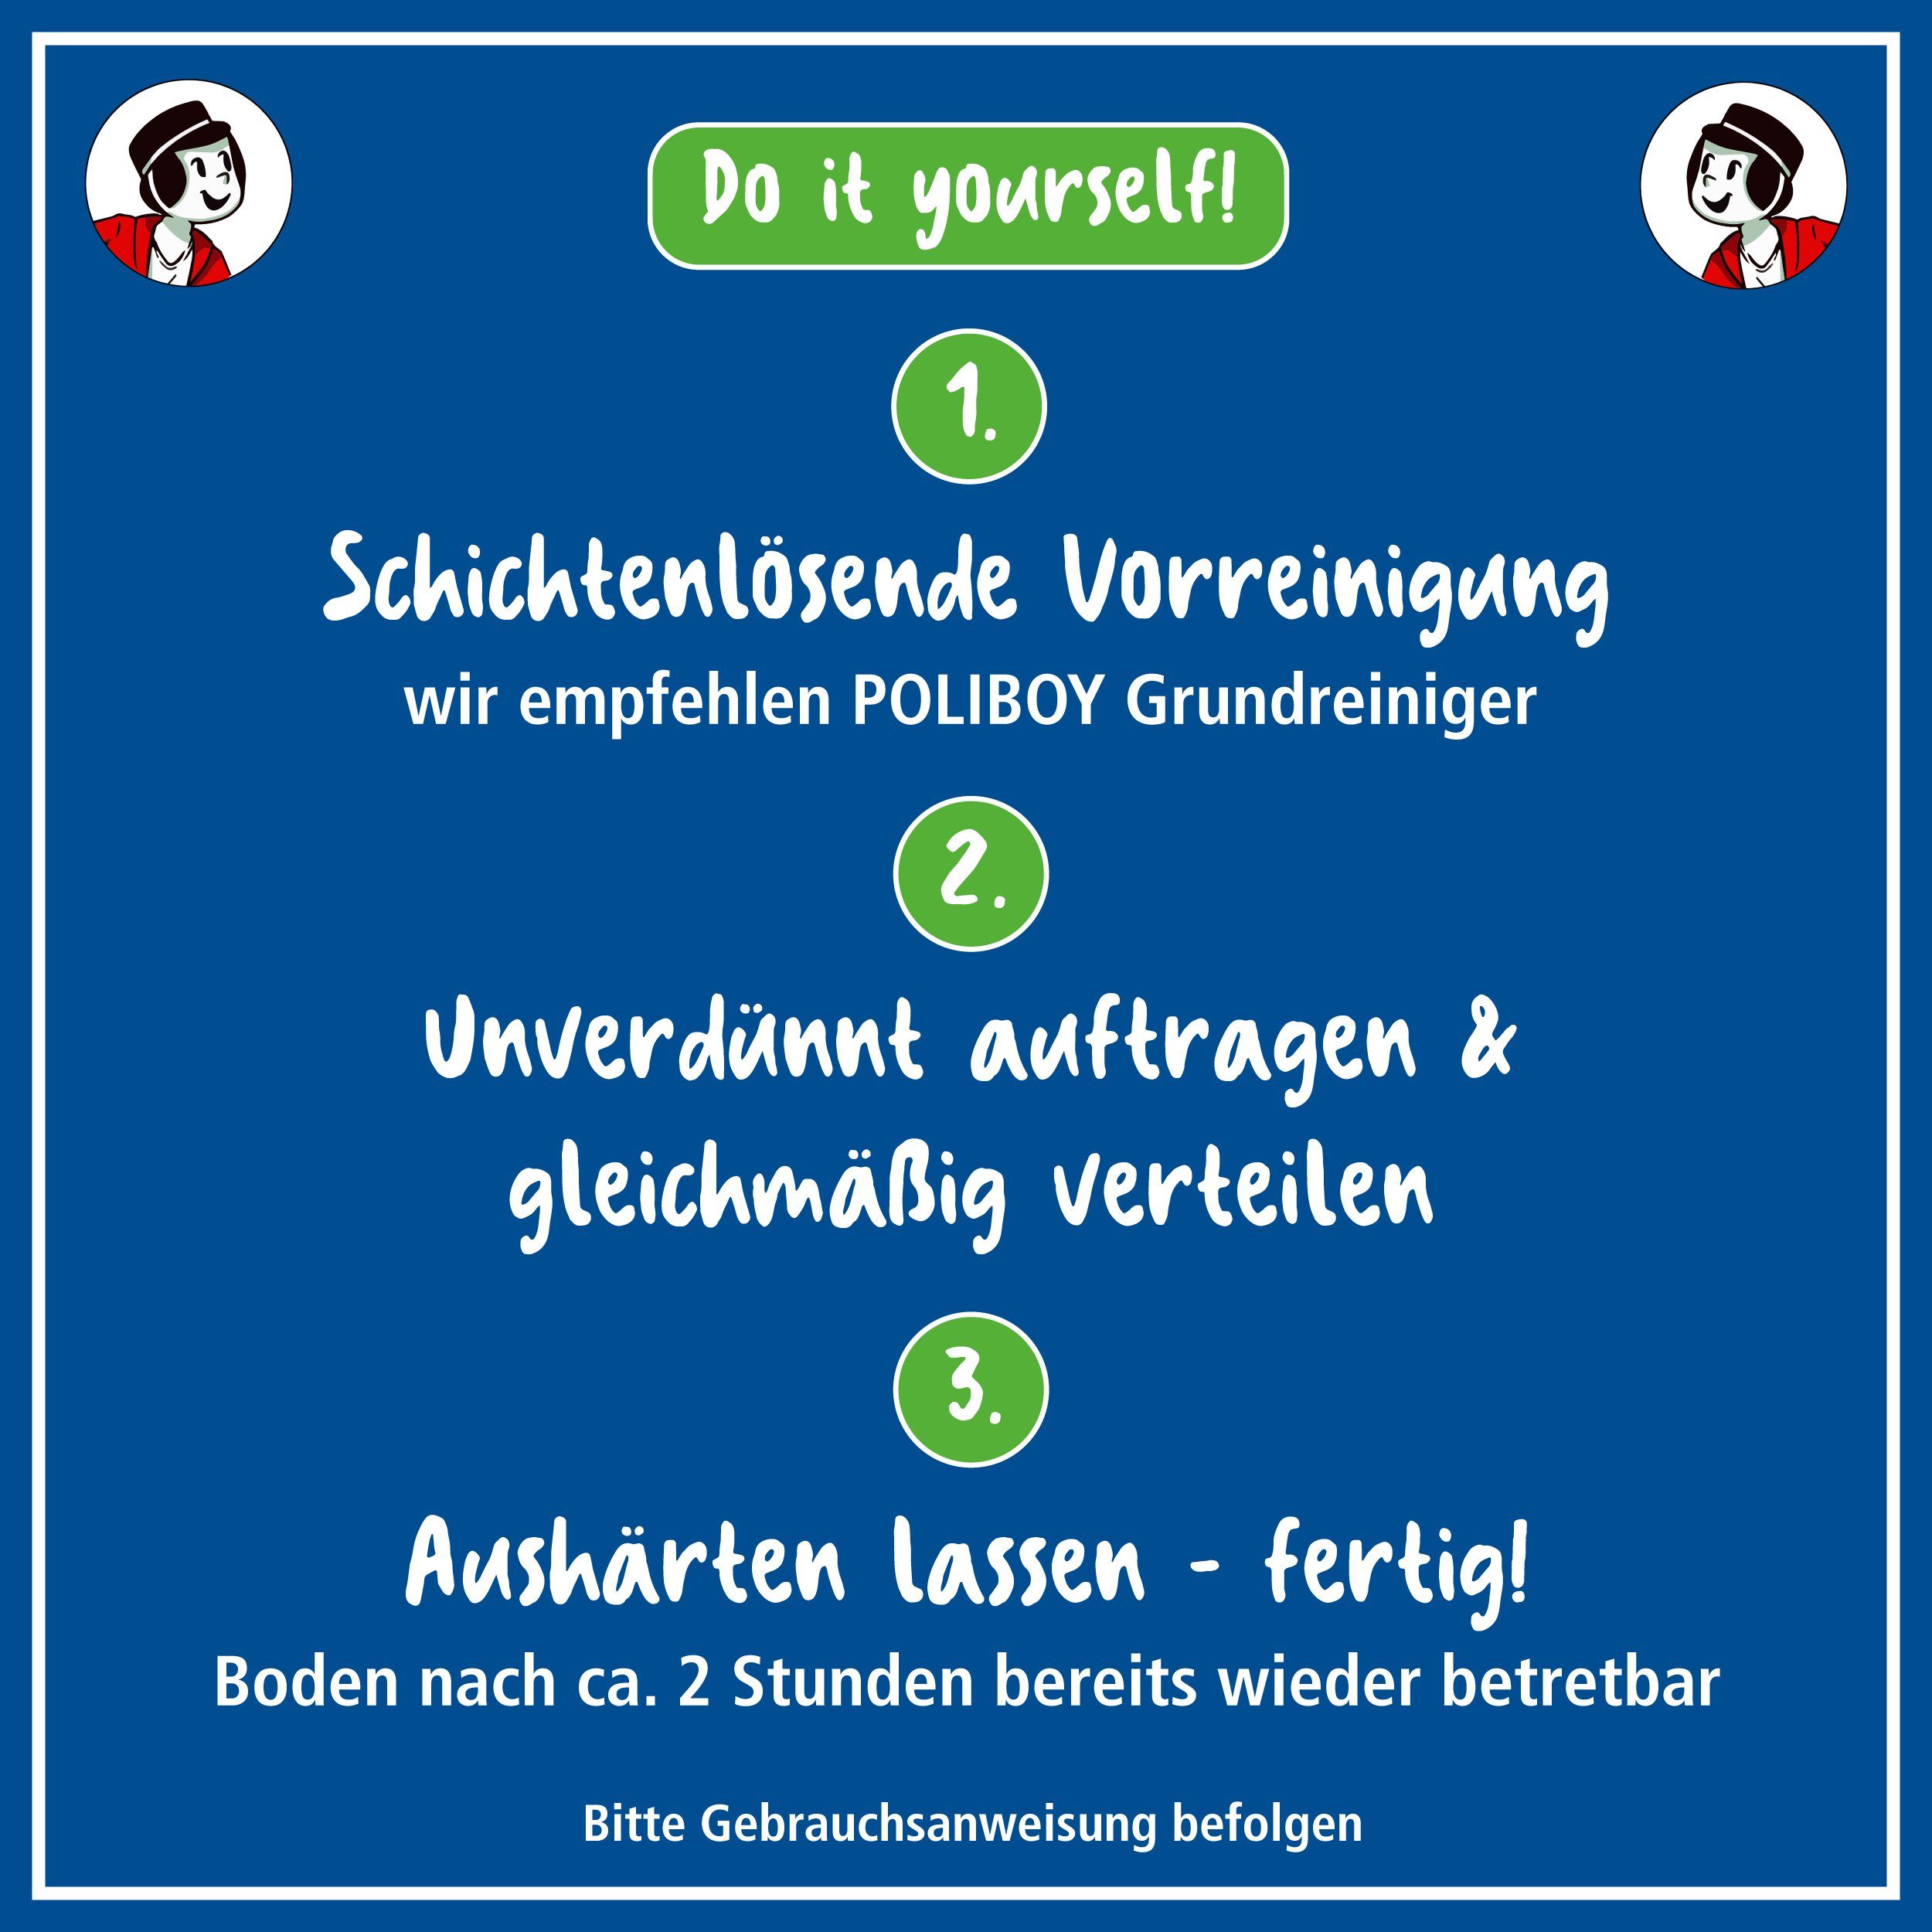 Liter Schutz für Sofort Laminat Germany) (lang - 2,5 - Laminatböden Laminatreiniger Glanz Made poliboy und - Renovierer - anhaltenden Versiegelung in